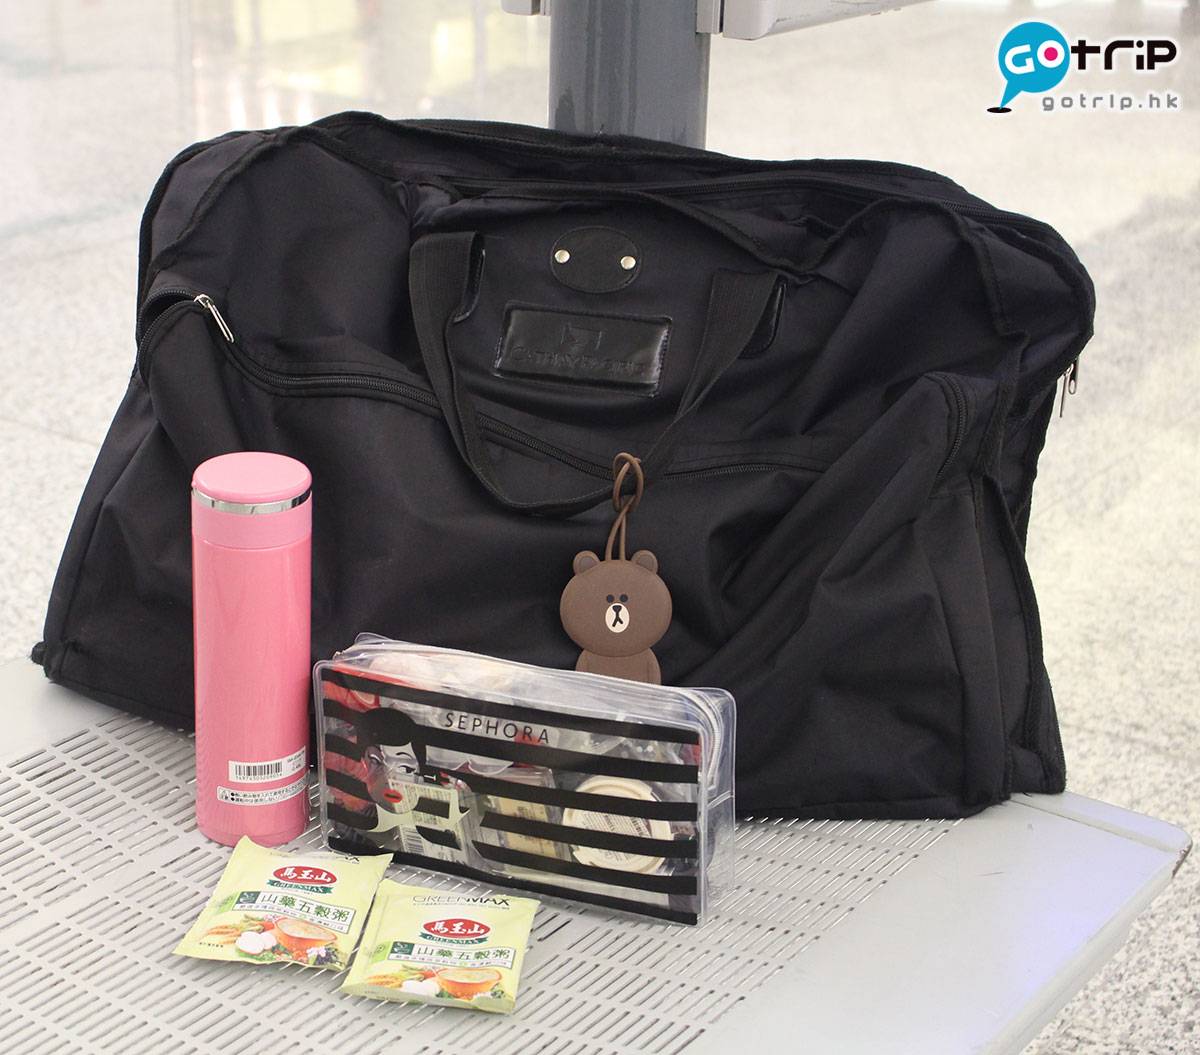 空姐 行李 免稅品 長途機 比利時 手提袋都是公司提供，與行李喼一樣，是冇花巧的黑色。